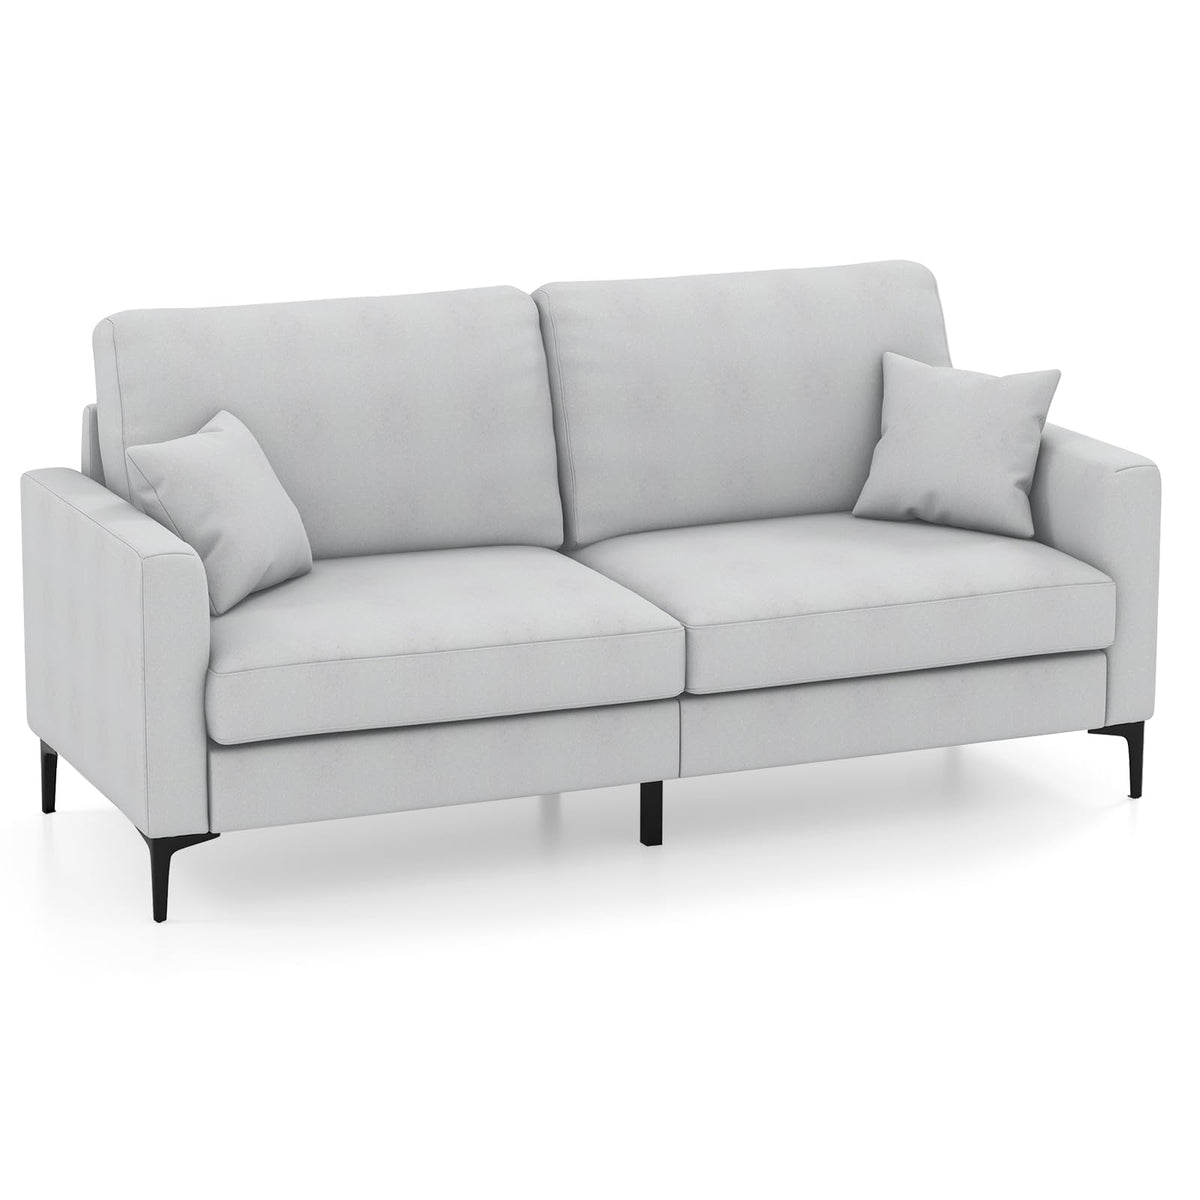 Giantex 191cm Wide Upholstered Loveseat Sofa